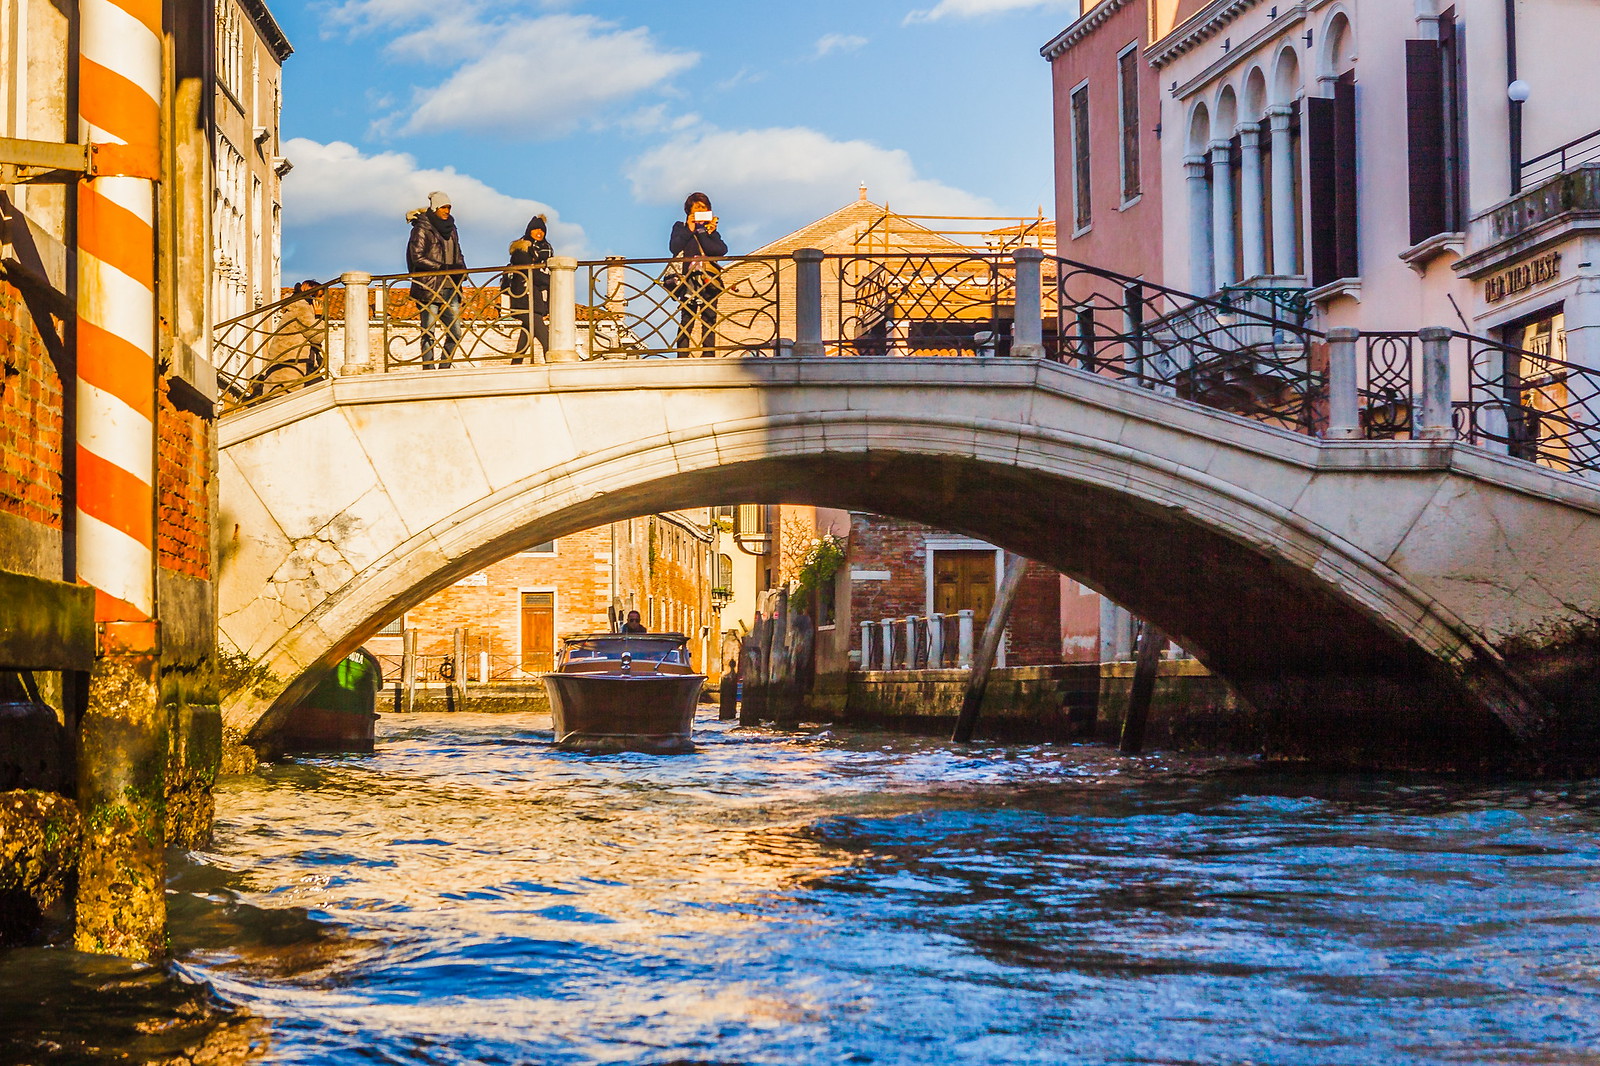 【携程攻略】威尼斯里亚托桥景点,来威尼斯的愿望之一就是看这座桥，曾经读过莎士比亚《威尼斯商人》的…